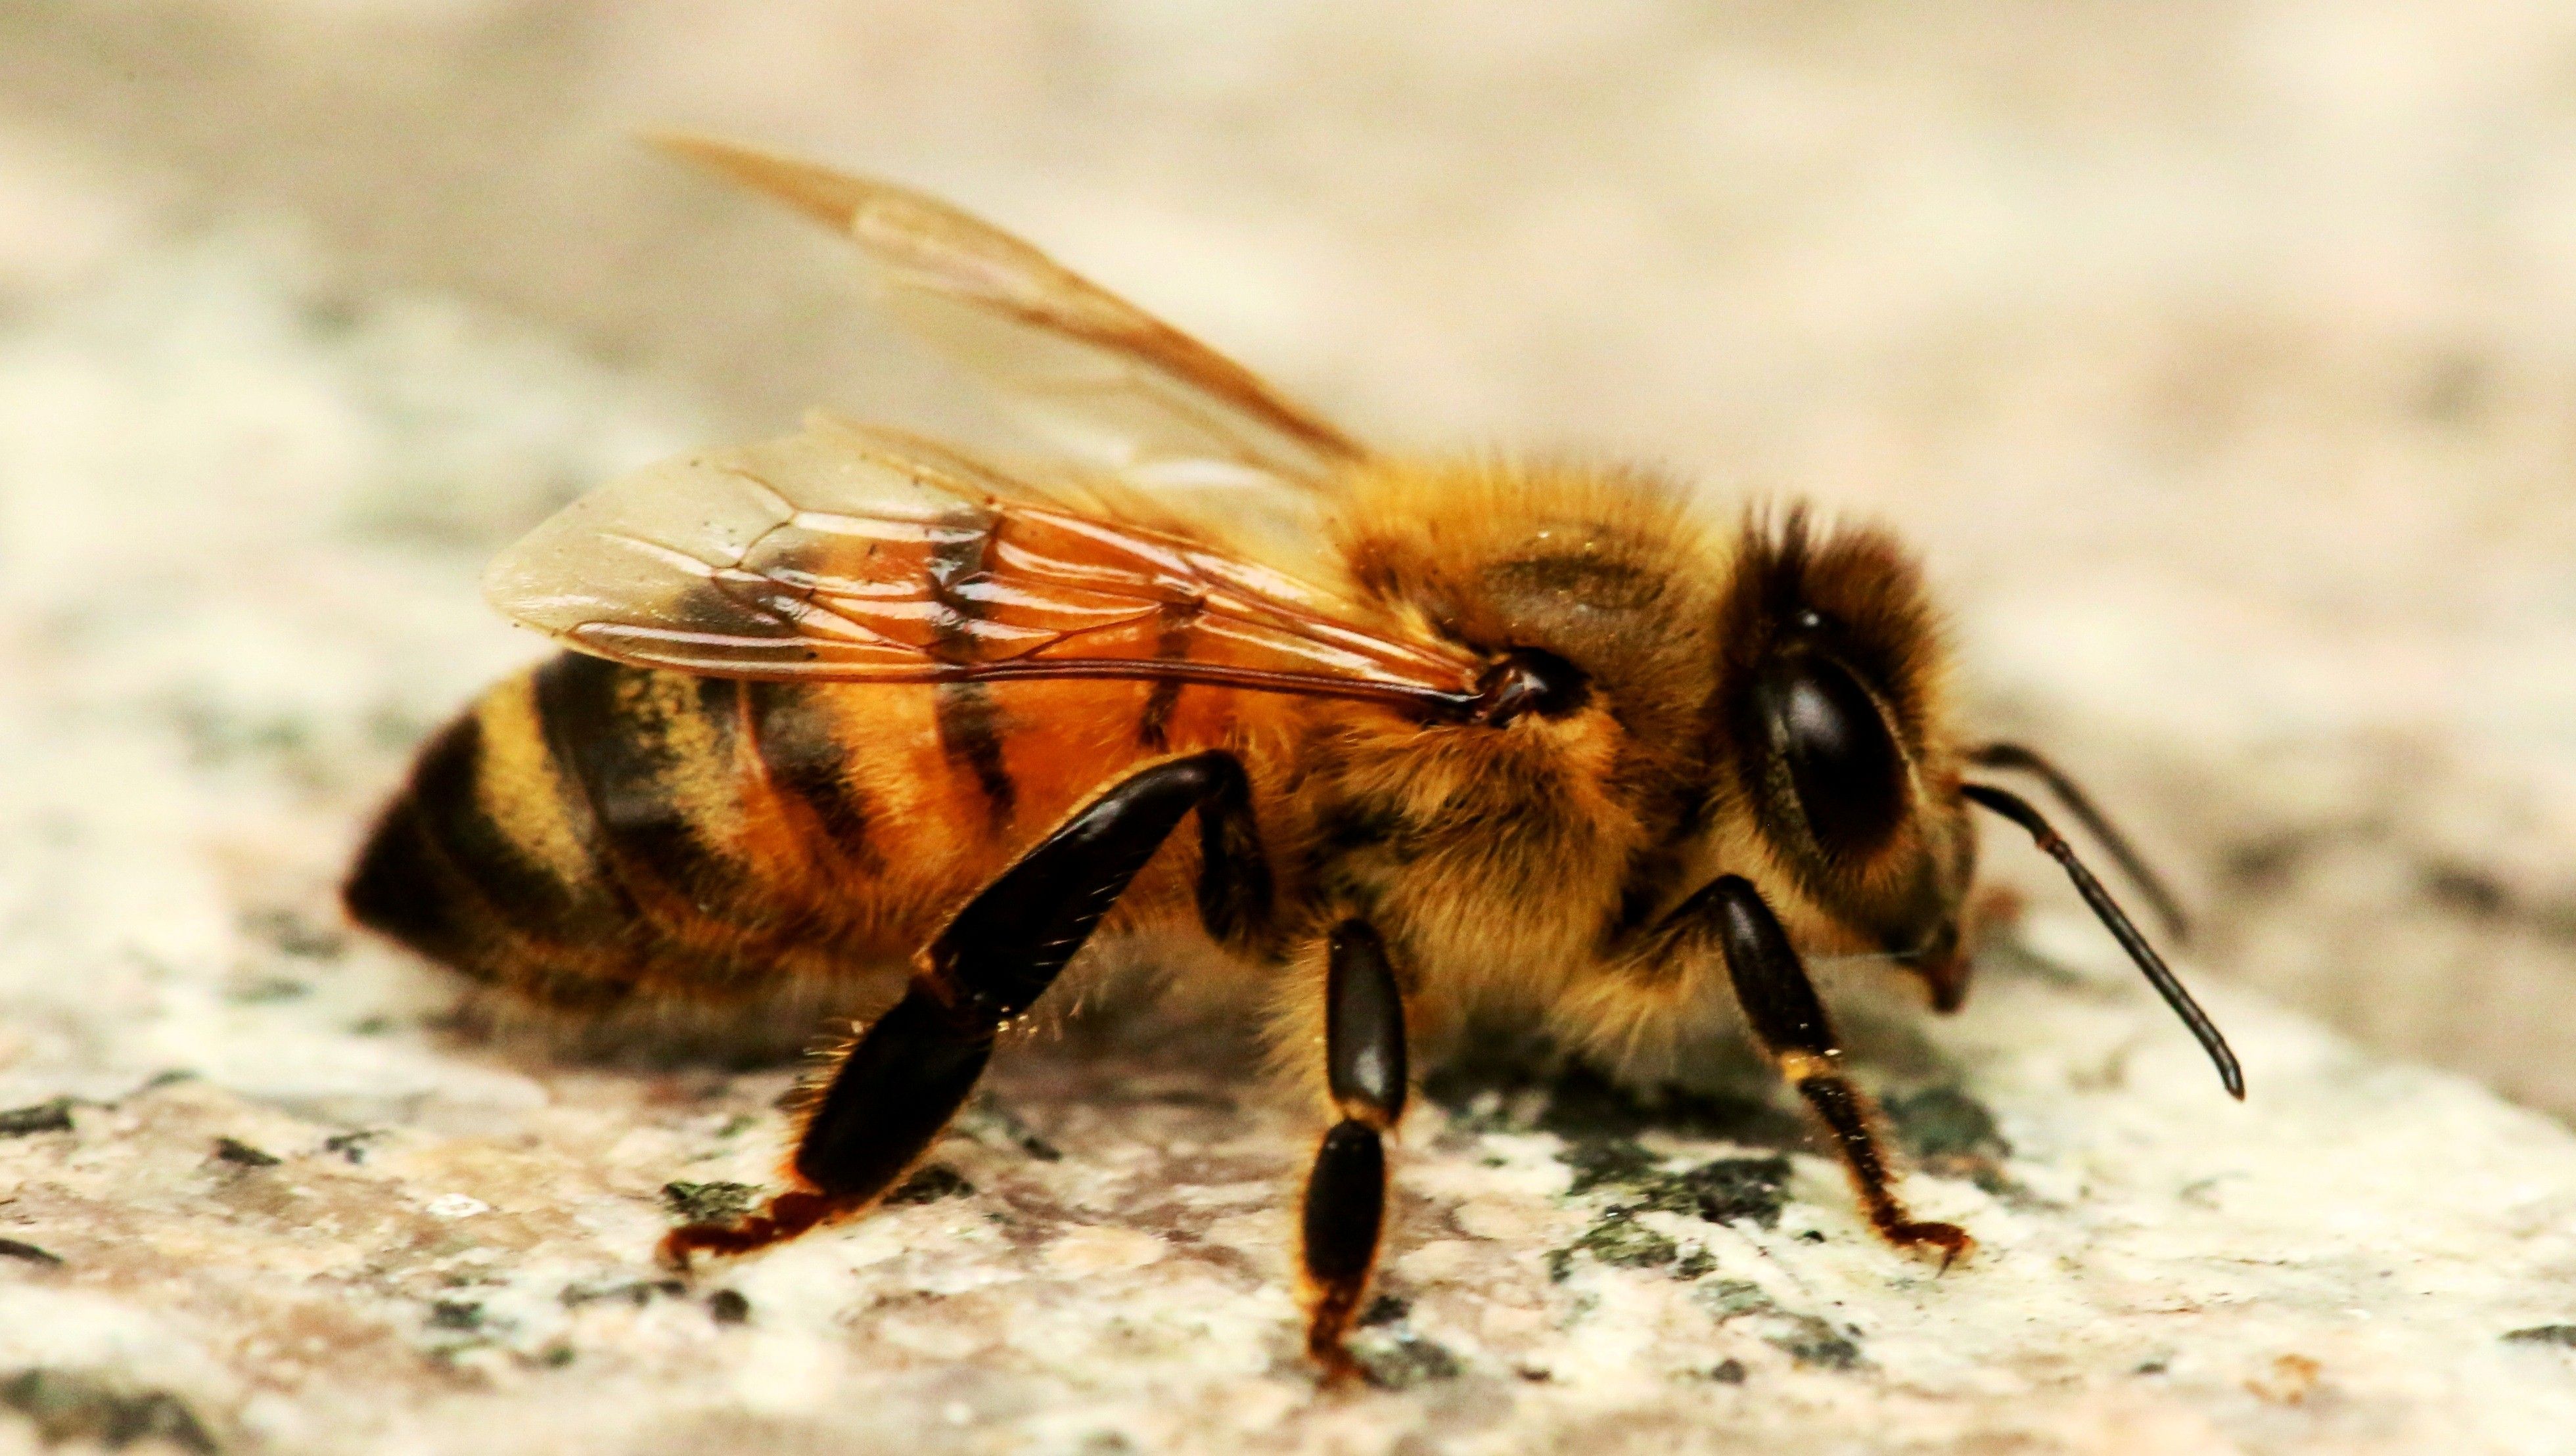 Honey Bee Desktop Wallpaper | HD Wallpapers | Pinterest | Bees ...